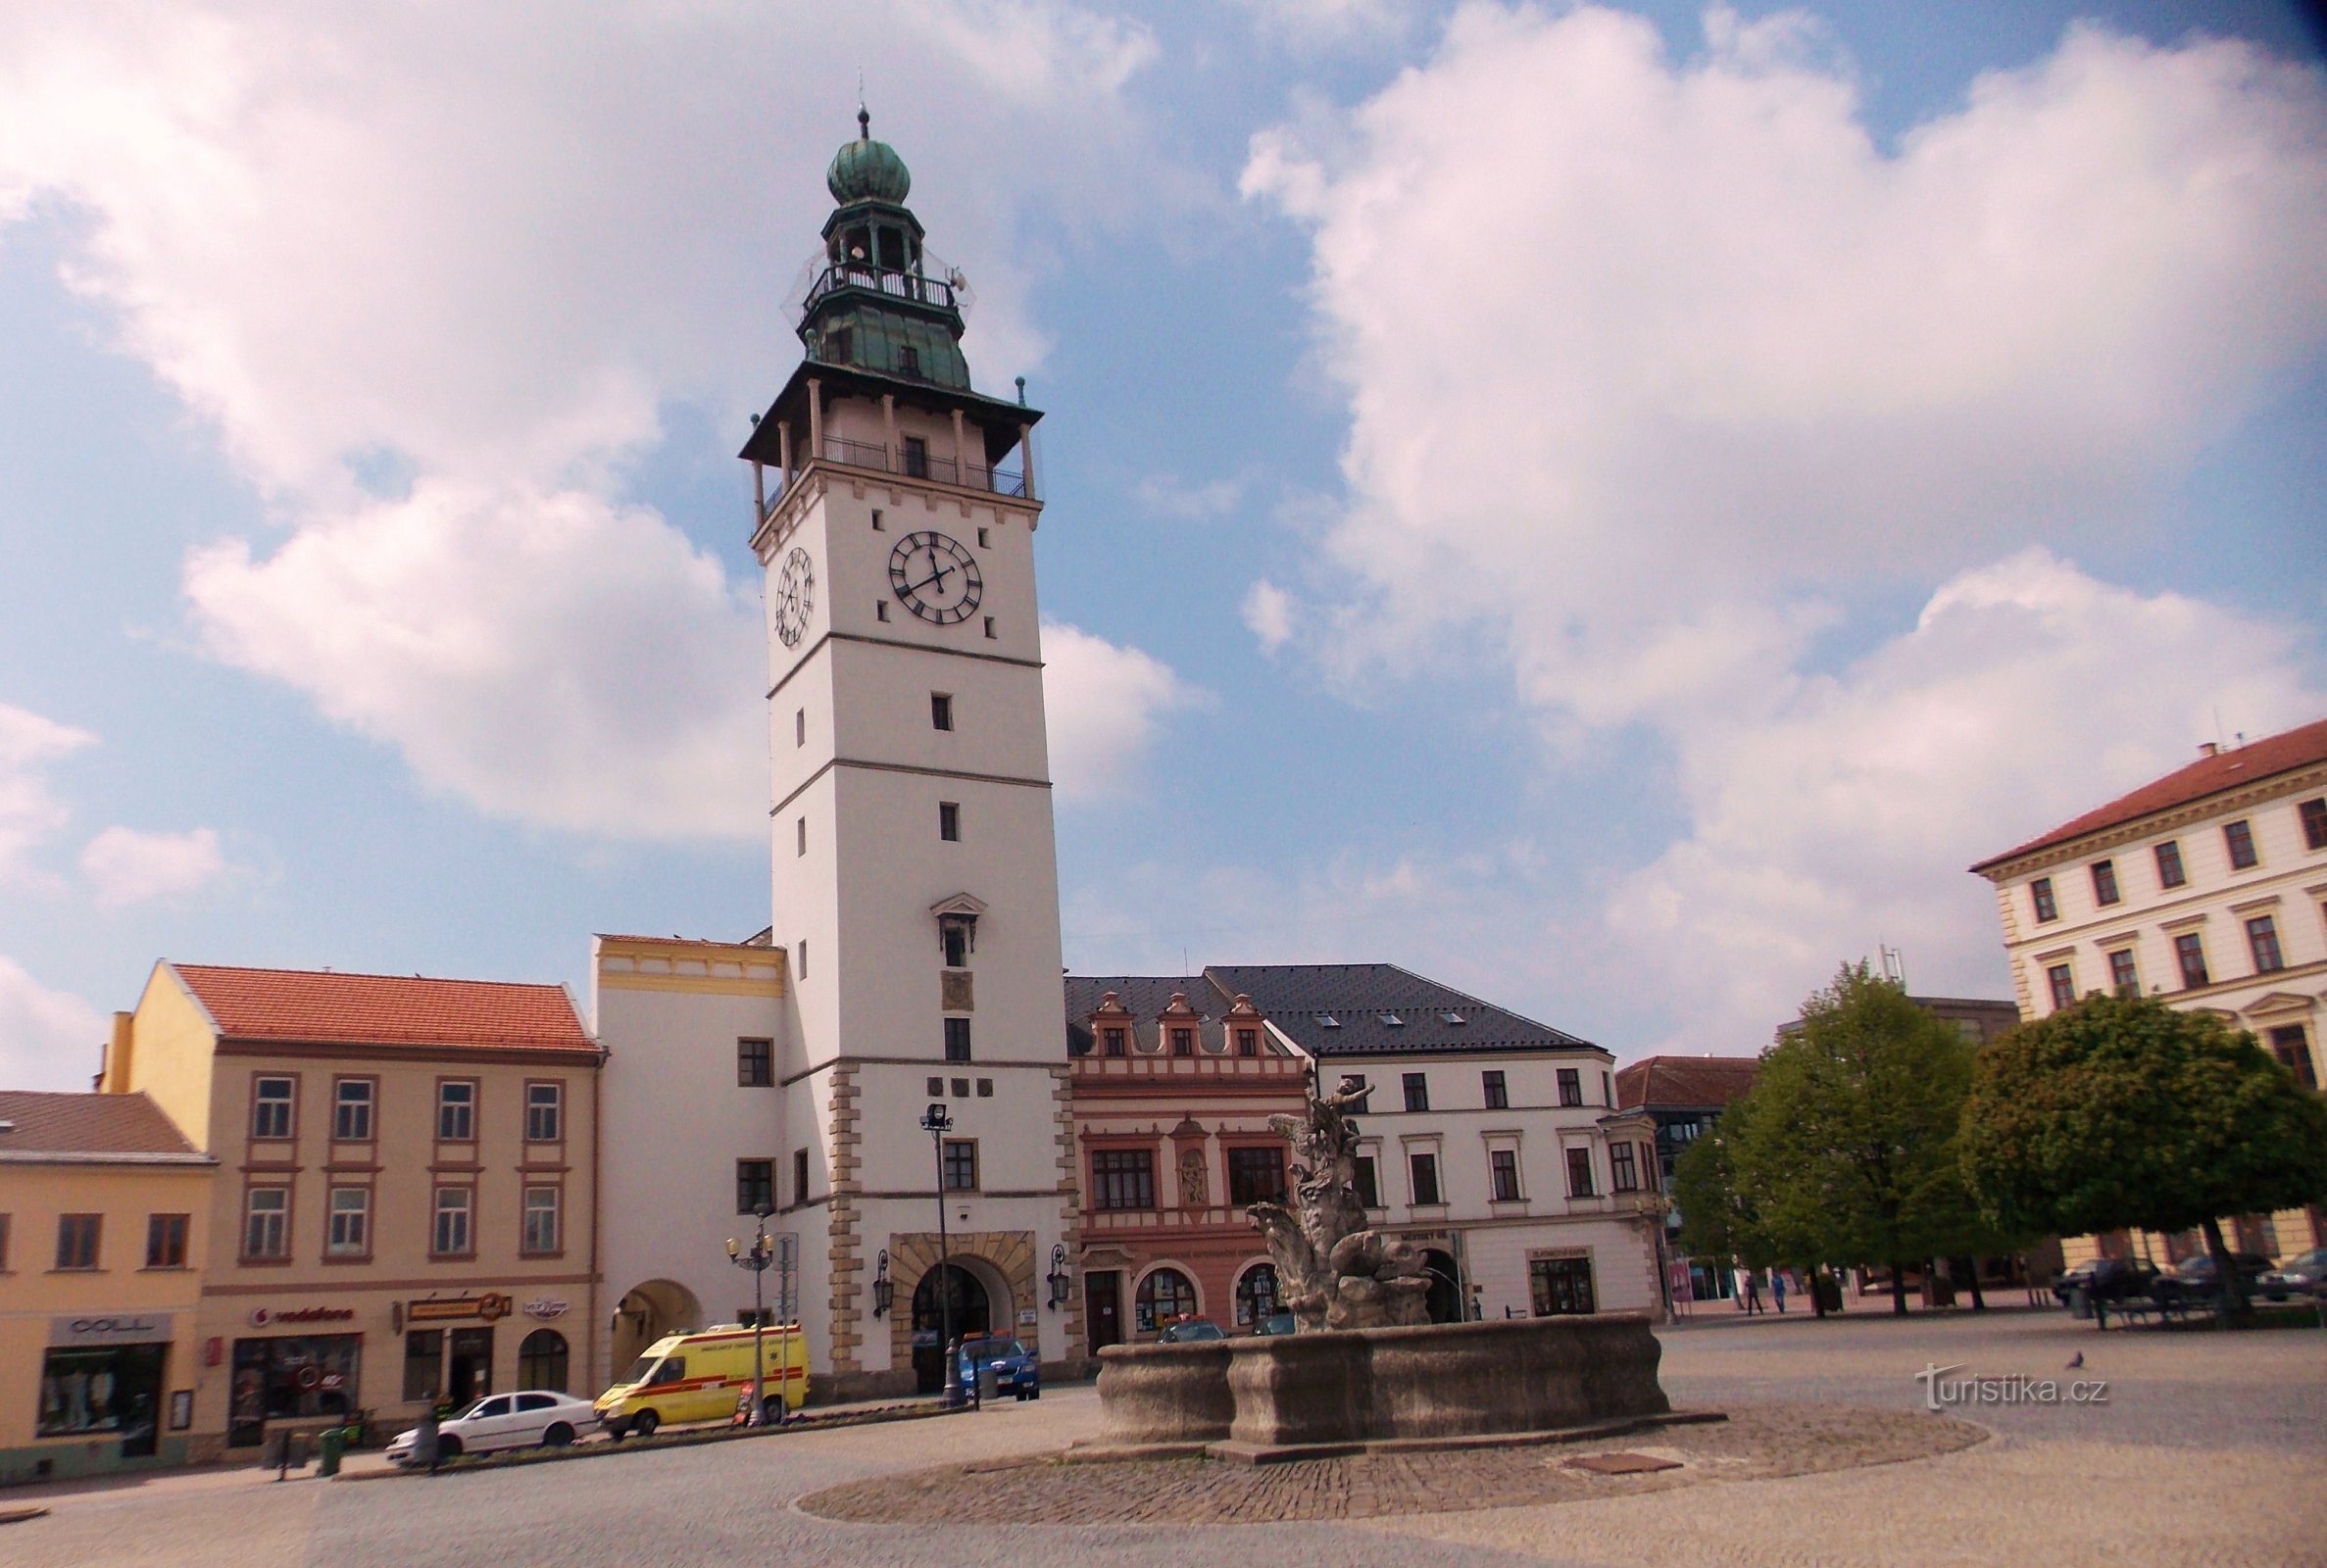 Câmara Municipal na Praça Masaryk em Vyškov